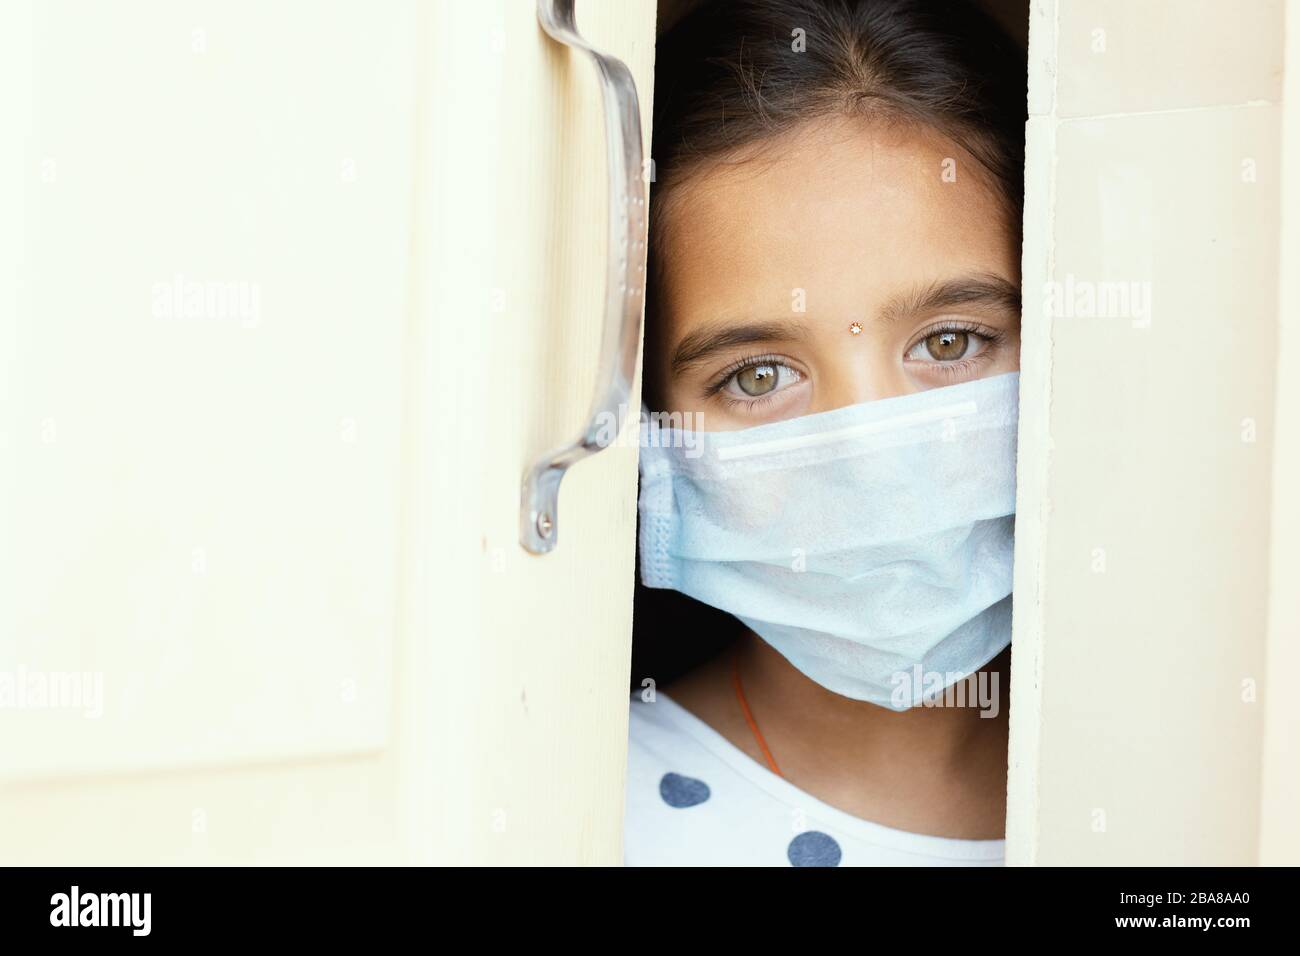 Junges trauriges Mädchen mit medizinischer Maske, das durch die Haustür schleicht - Konzept der Hausquarantäne aufgrund eines Kovid-19- oder Coronavirus-Ausbruchs. Stockfoto